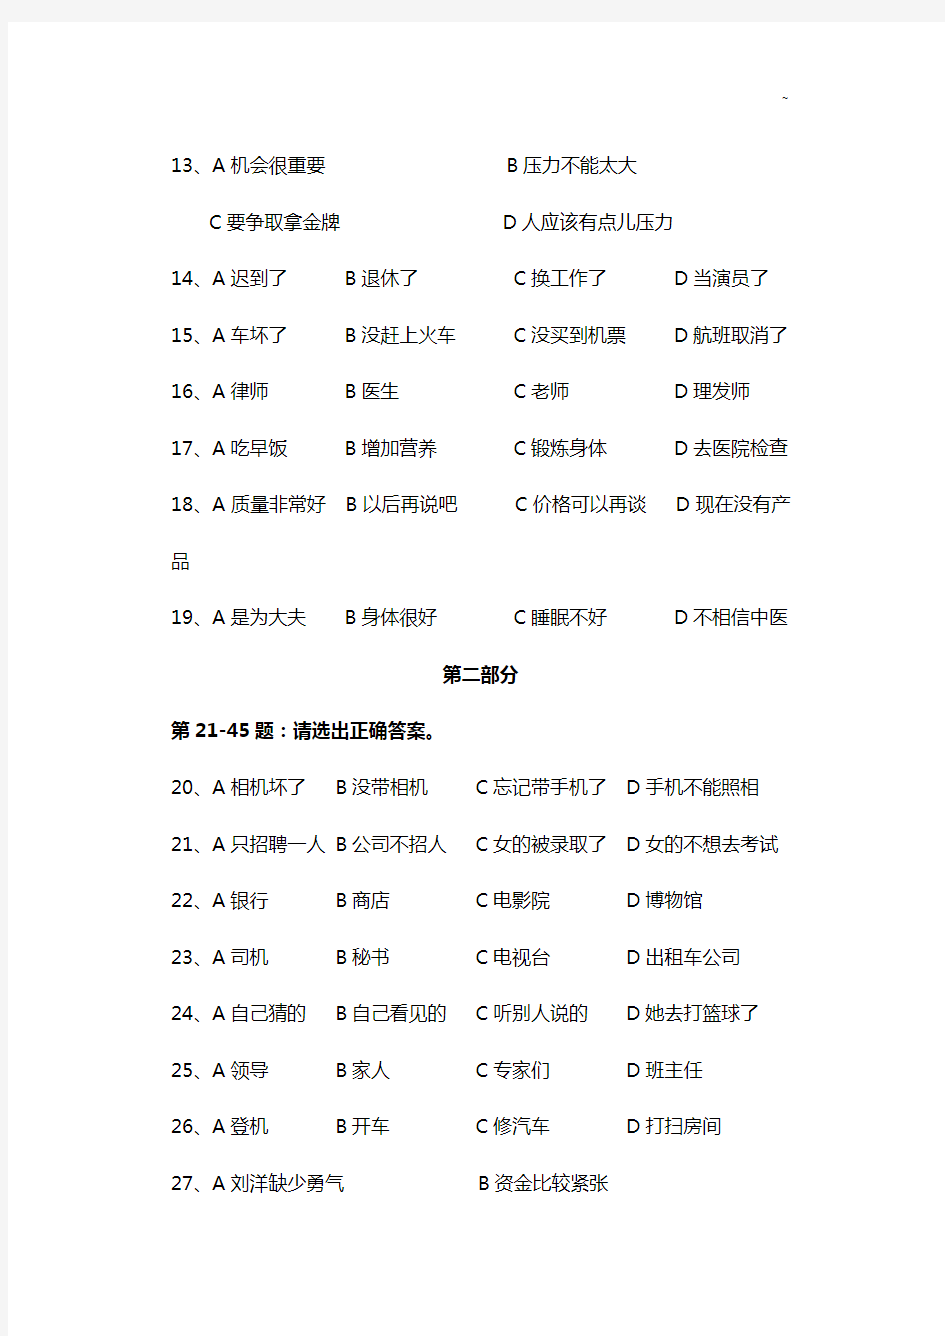 新汉语水平考试HSK(五级)